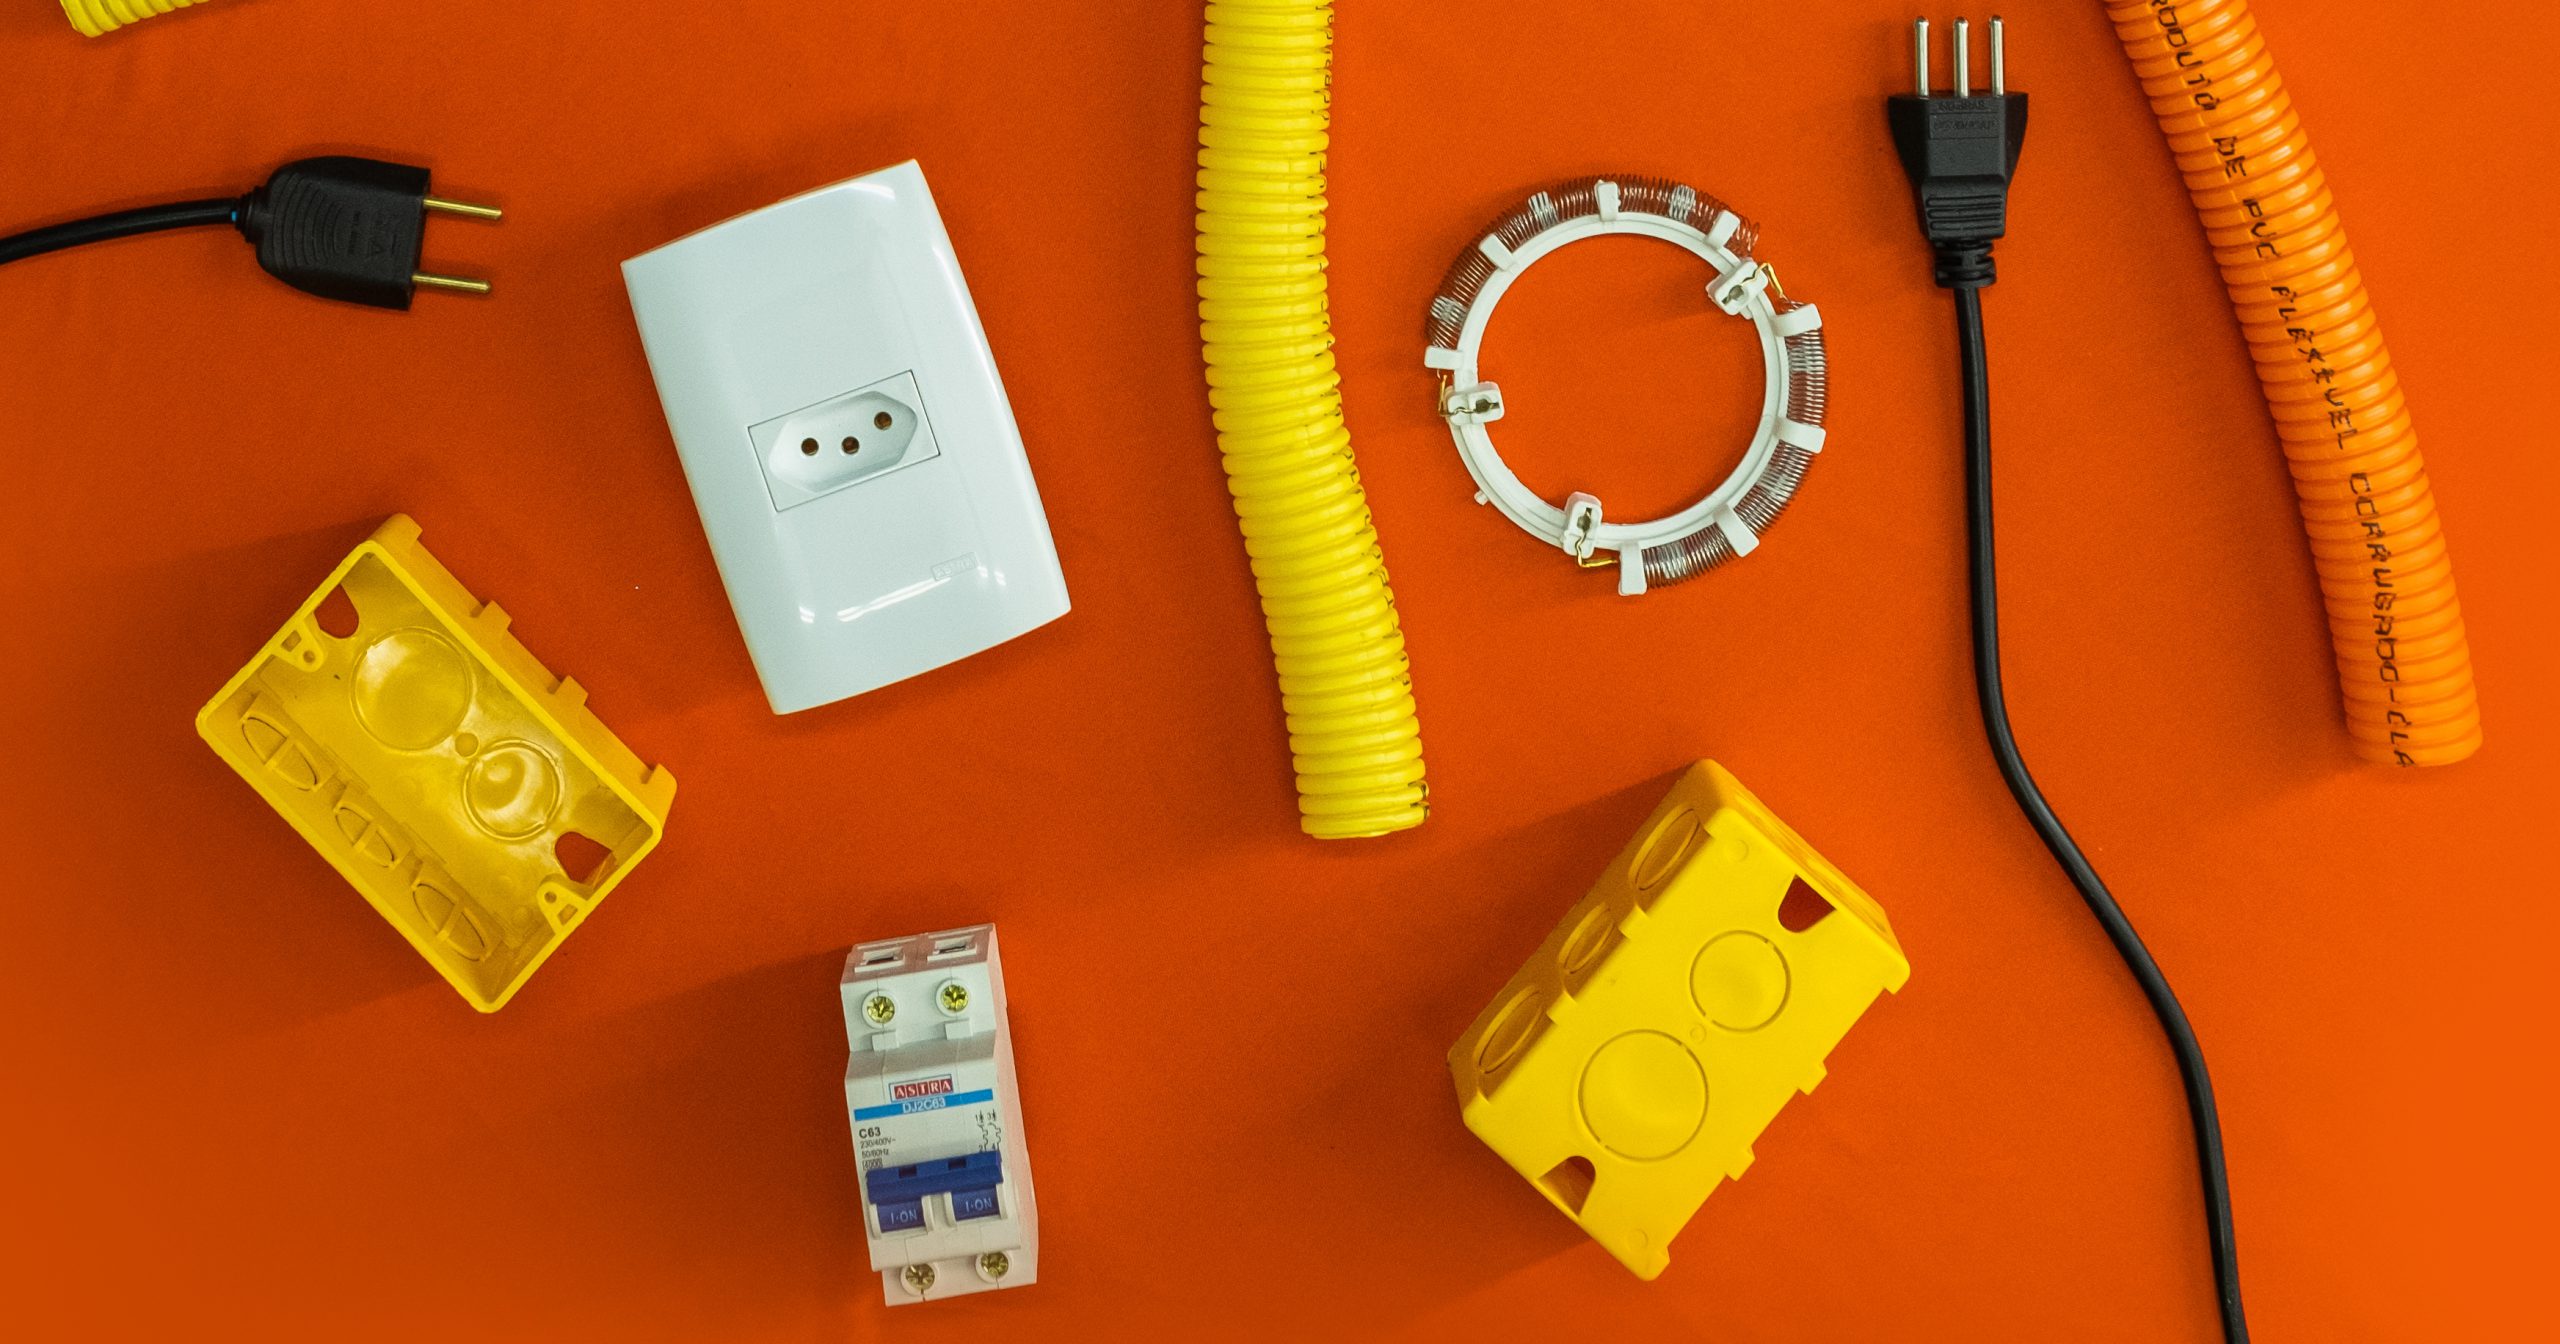 A imagem apresenta diversos produtos de elétrica ambientados em um fundo laranja. 